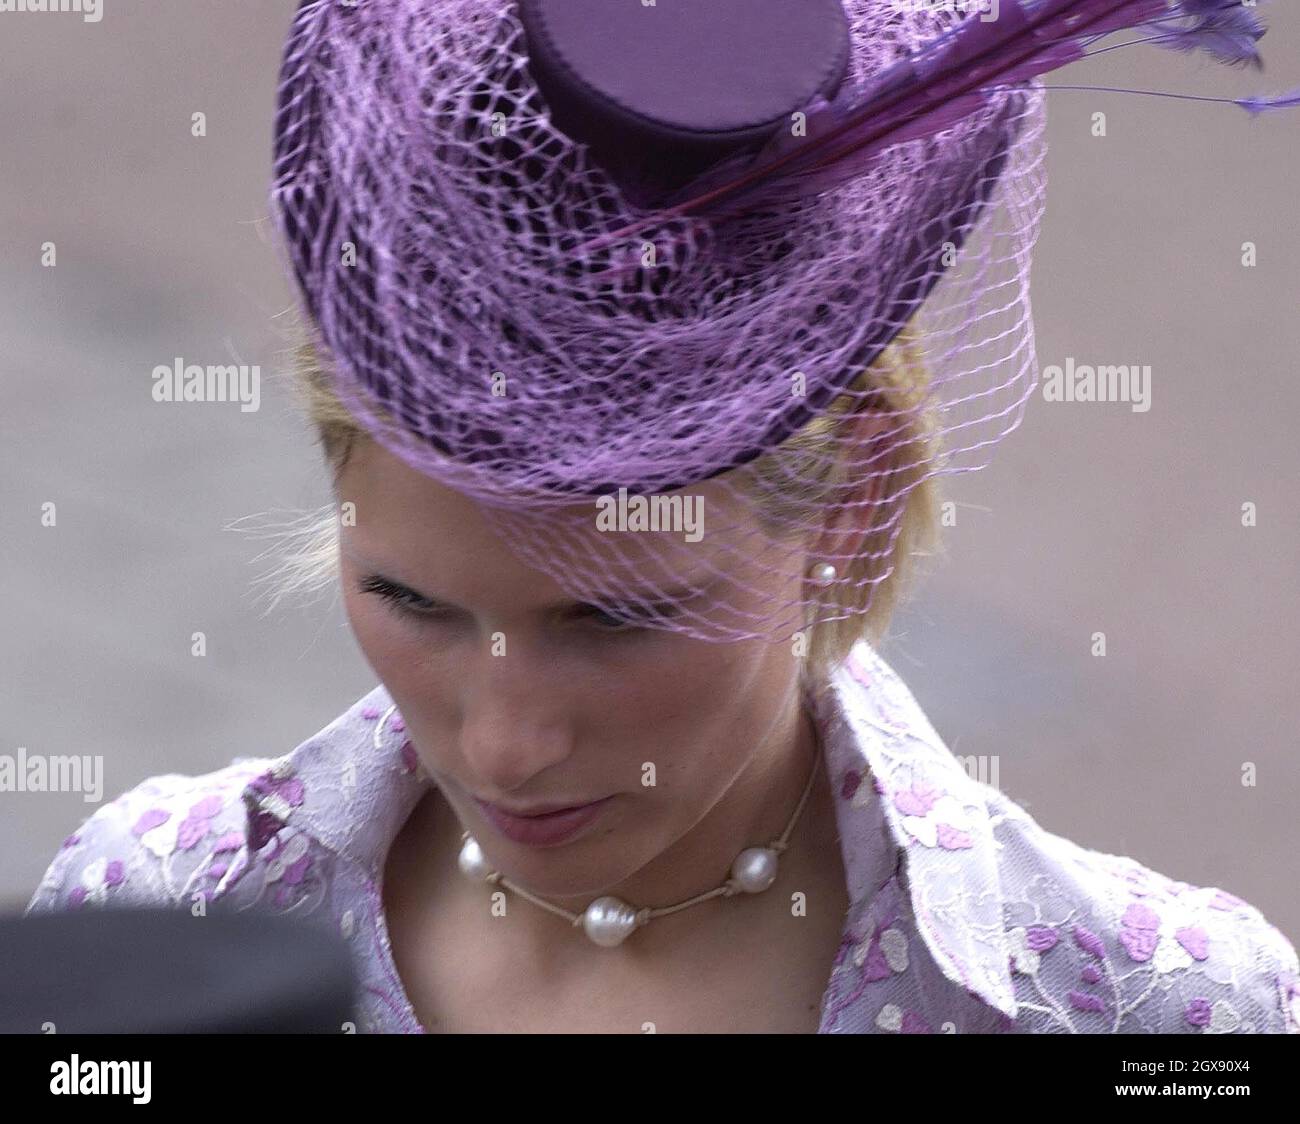 Zara Phillips le jour de l'ouverture de Royal Ascot.Zara porte un chapeau  de licaque avec plumes et robe ajustée de lilas brodées assorties.Photo,  royauté Photo Stock - Alamy